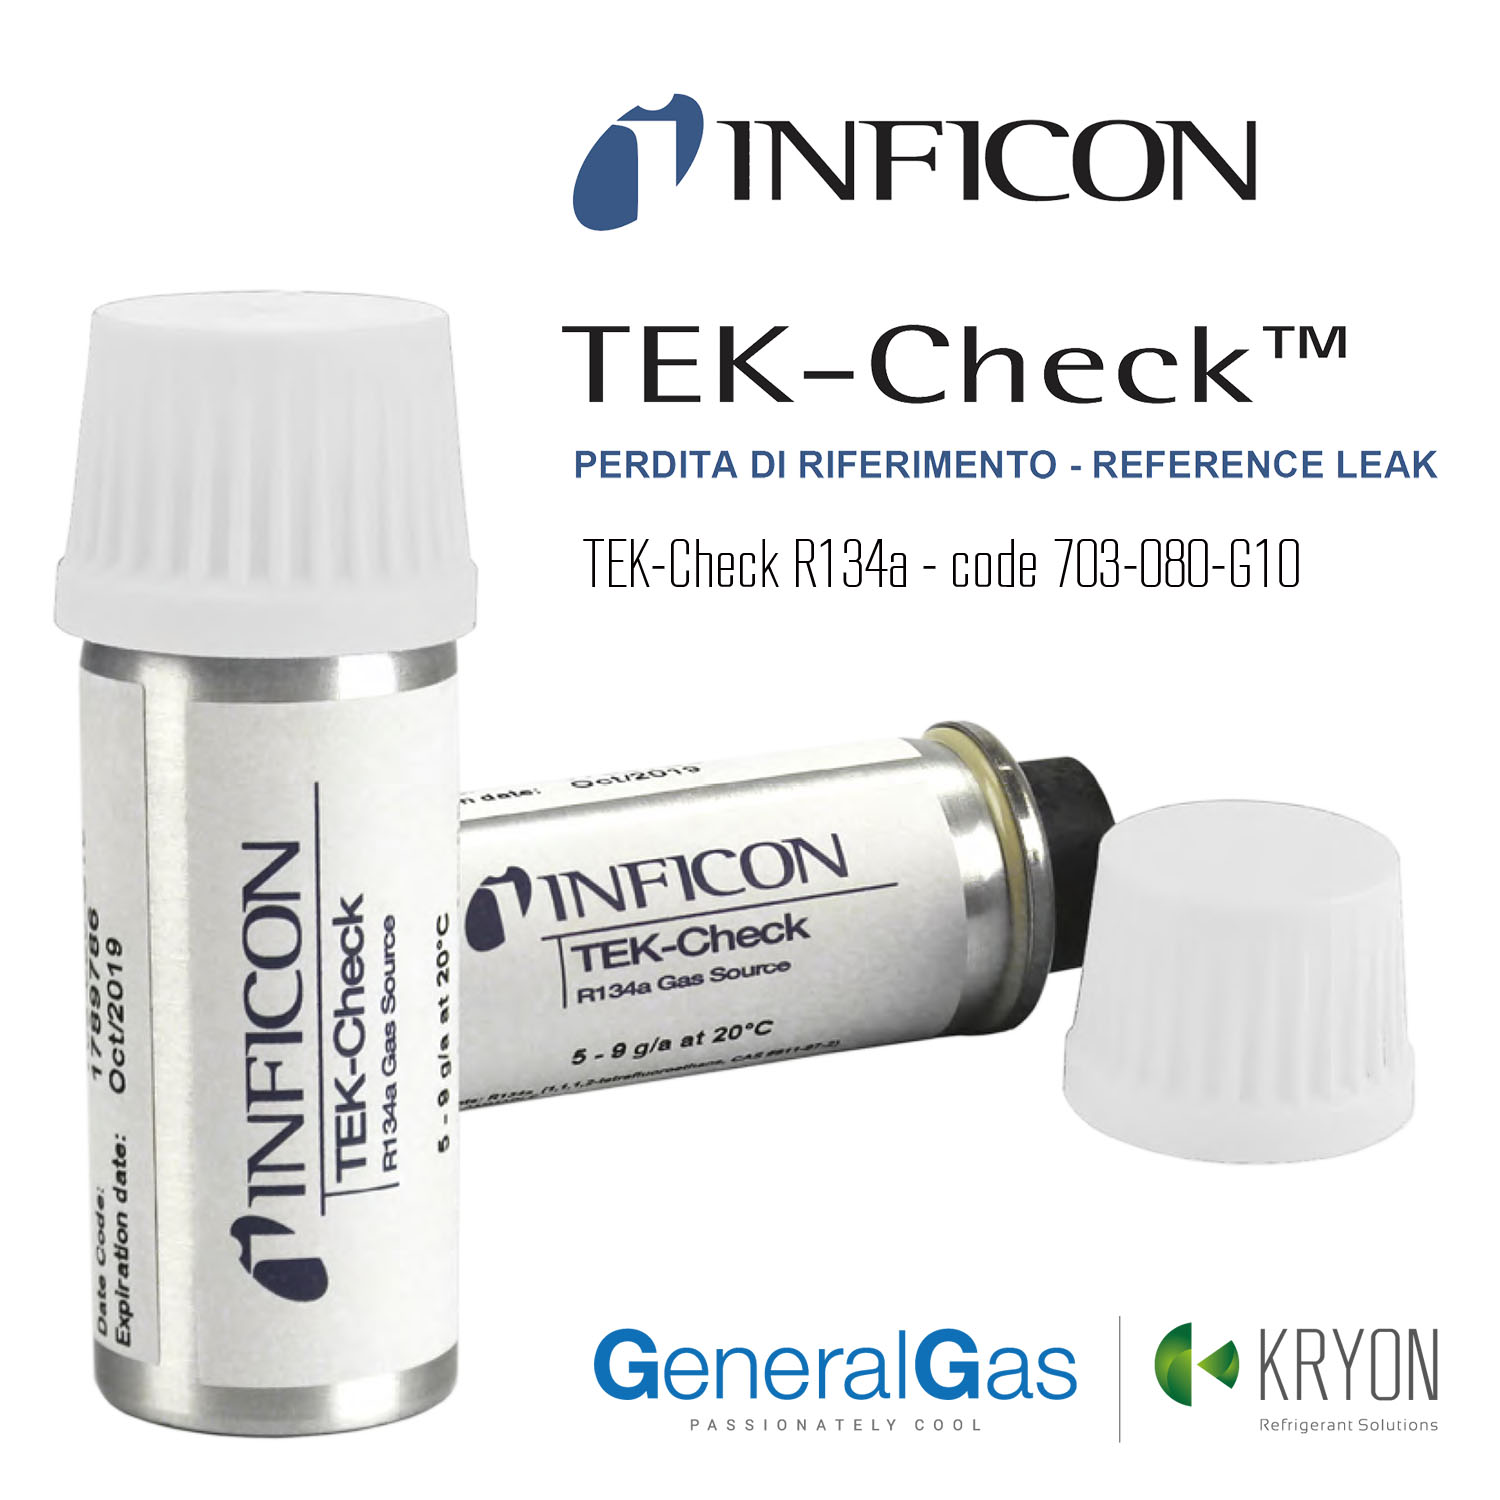 Inficon TEK-Check - perdita di riferimento per controllo cercafughe/rilevatori di perdite gas refrigeranti - tasso di perdita 5 grammi/anno HFC 134a